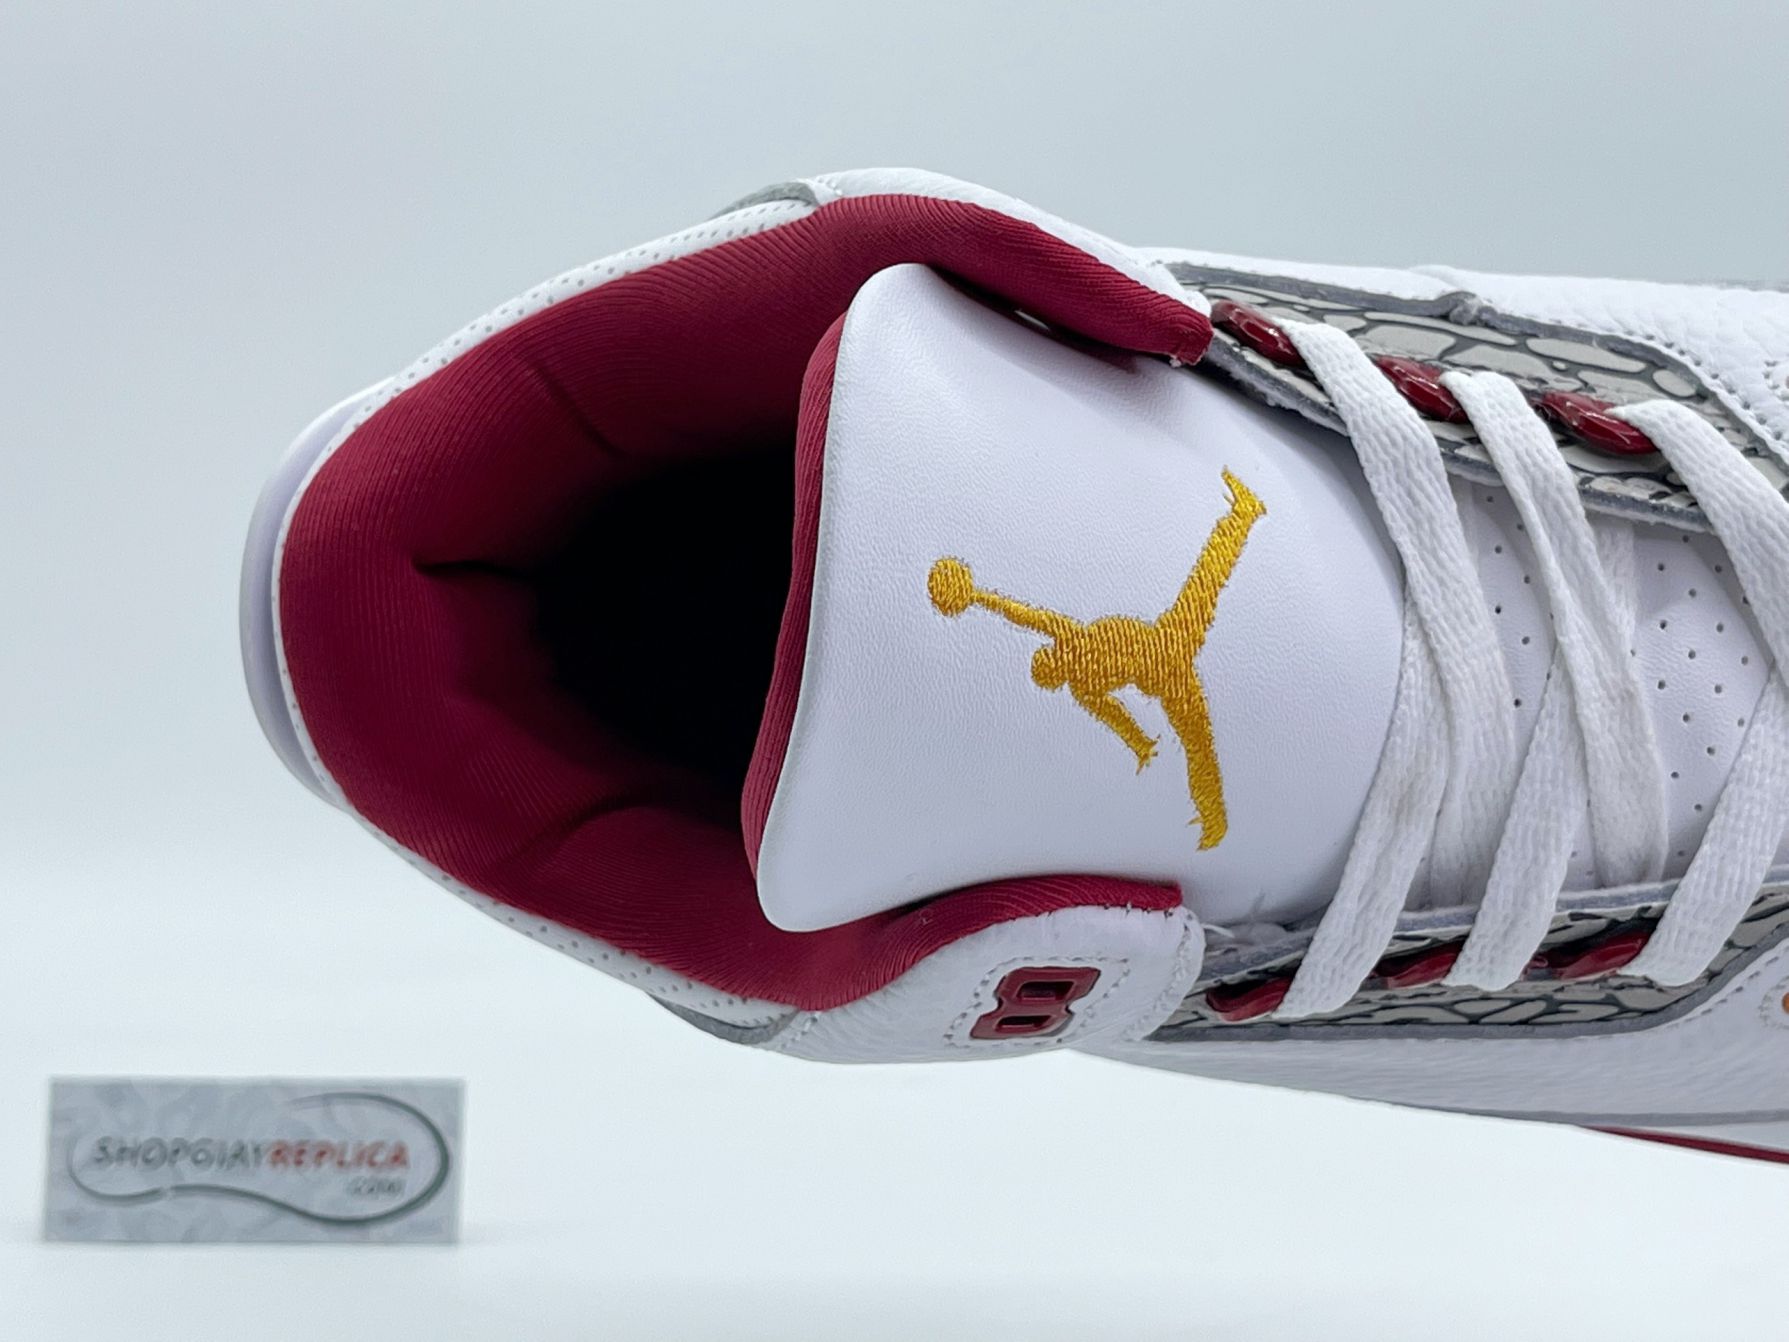 Giày Nike Air Jordan 3 Retro ‘Cardinal Red’ đỏ trắng